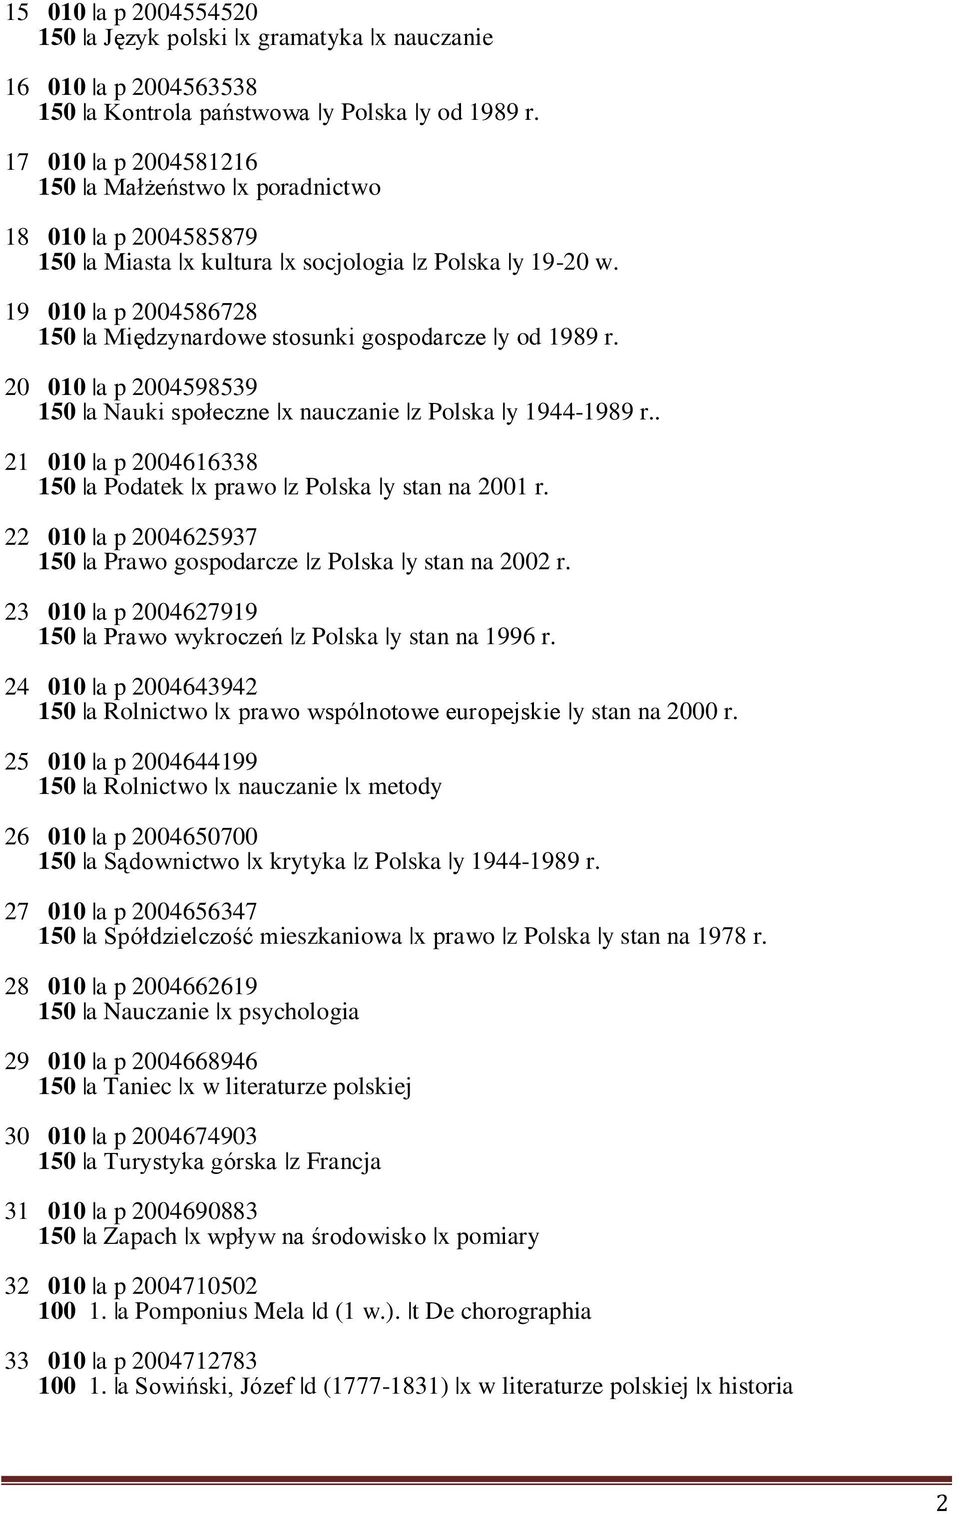 19 010 a p 2004586728 150 a Międzynardowe stosunki gospodarcze y od 1989 r. 20 010 a p 2004598539 150 a Nauki społeczne x nauczanie z Polska y 1944-1989 r.